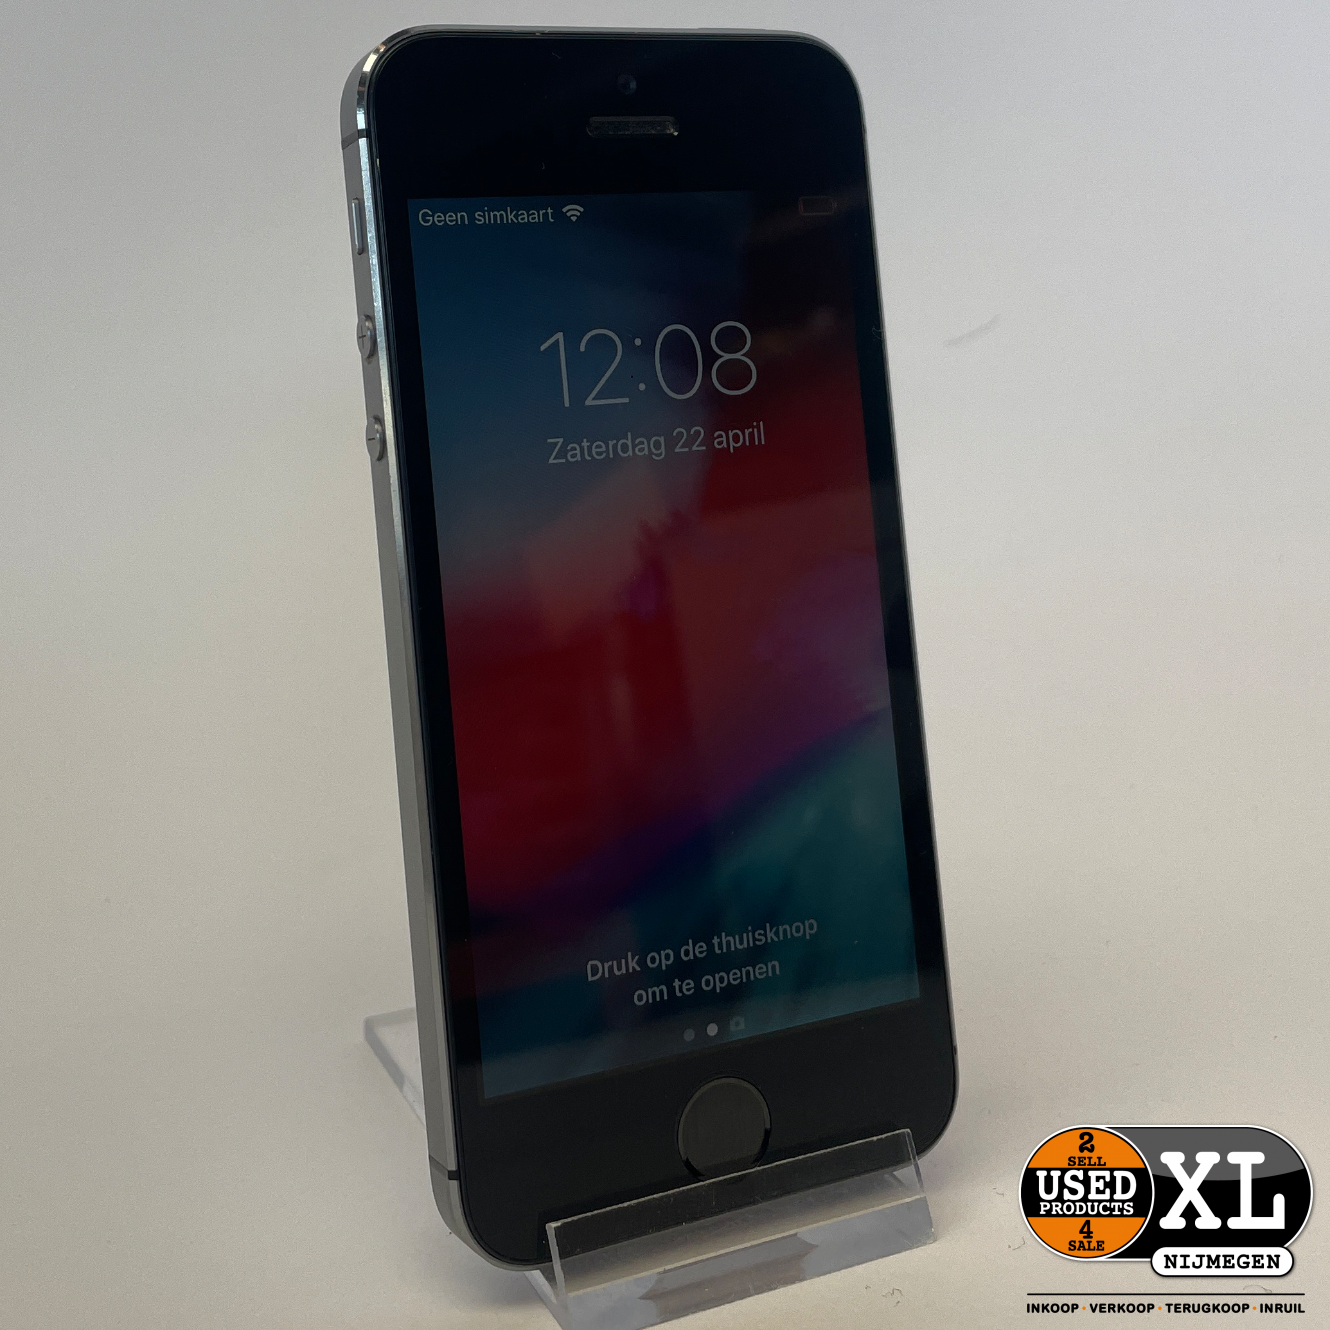 Apple iPhone 5S Zilver/Zwart 16GB | met Garantie - Used Nijmegen XL